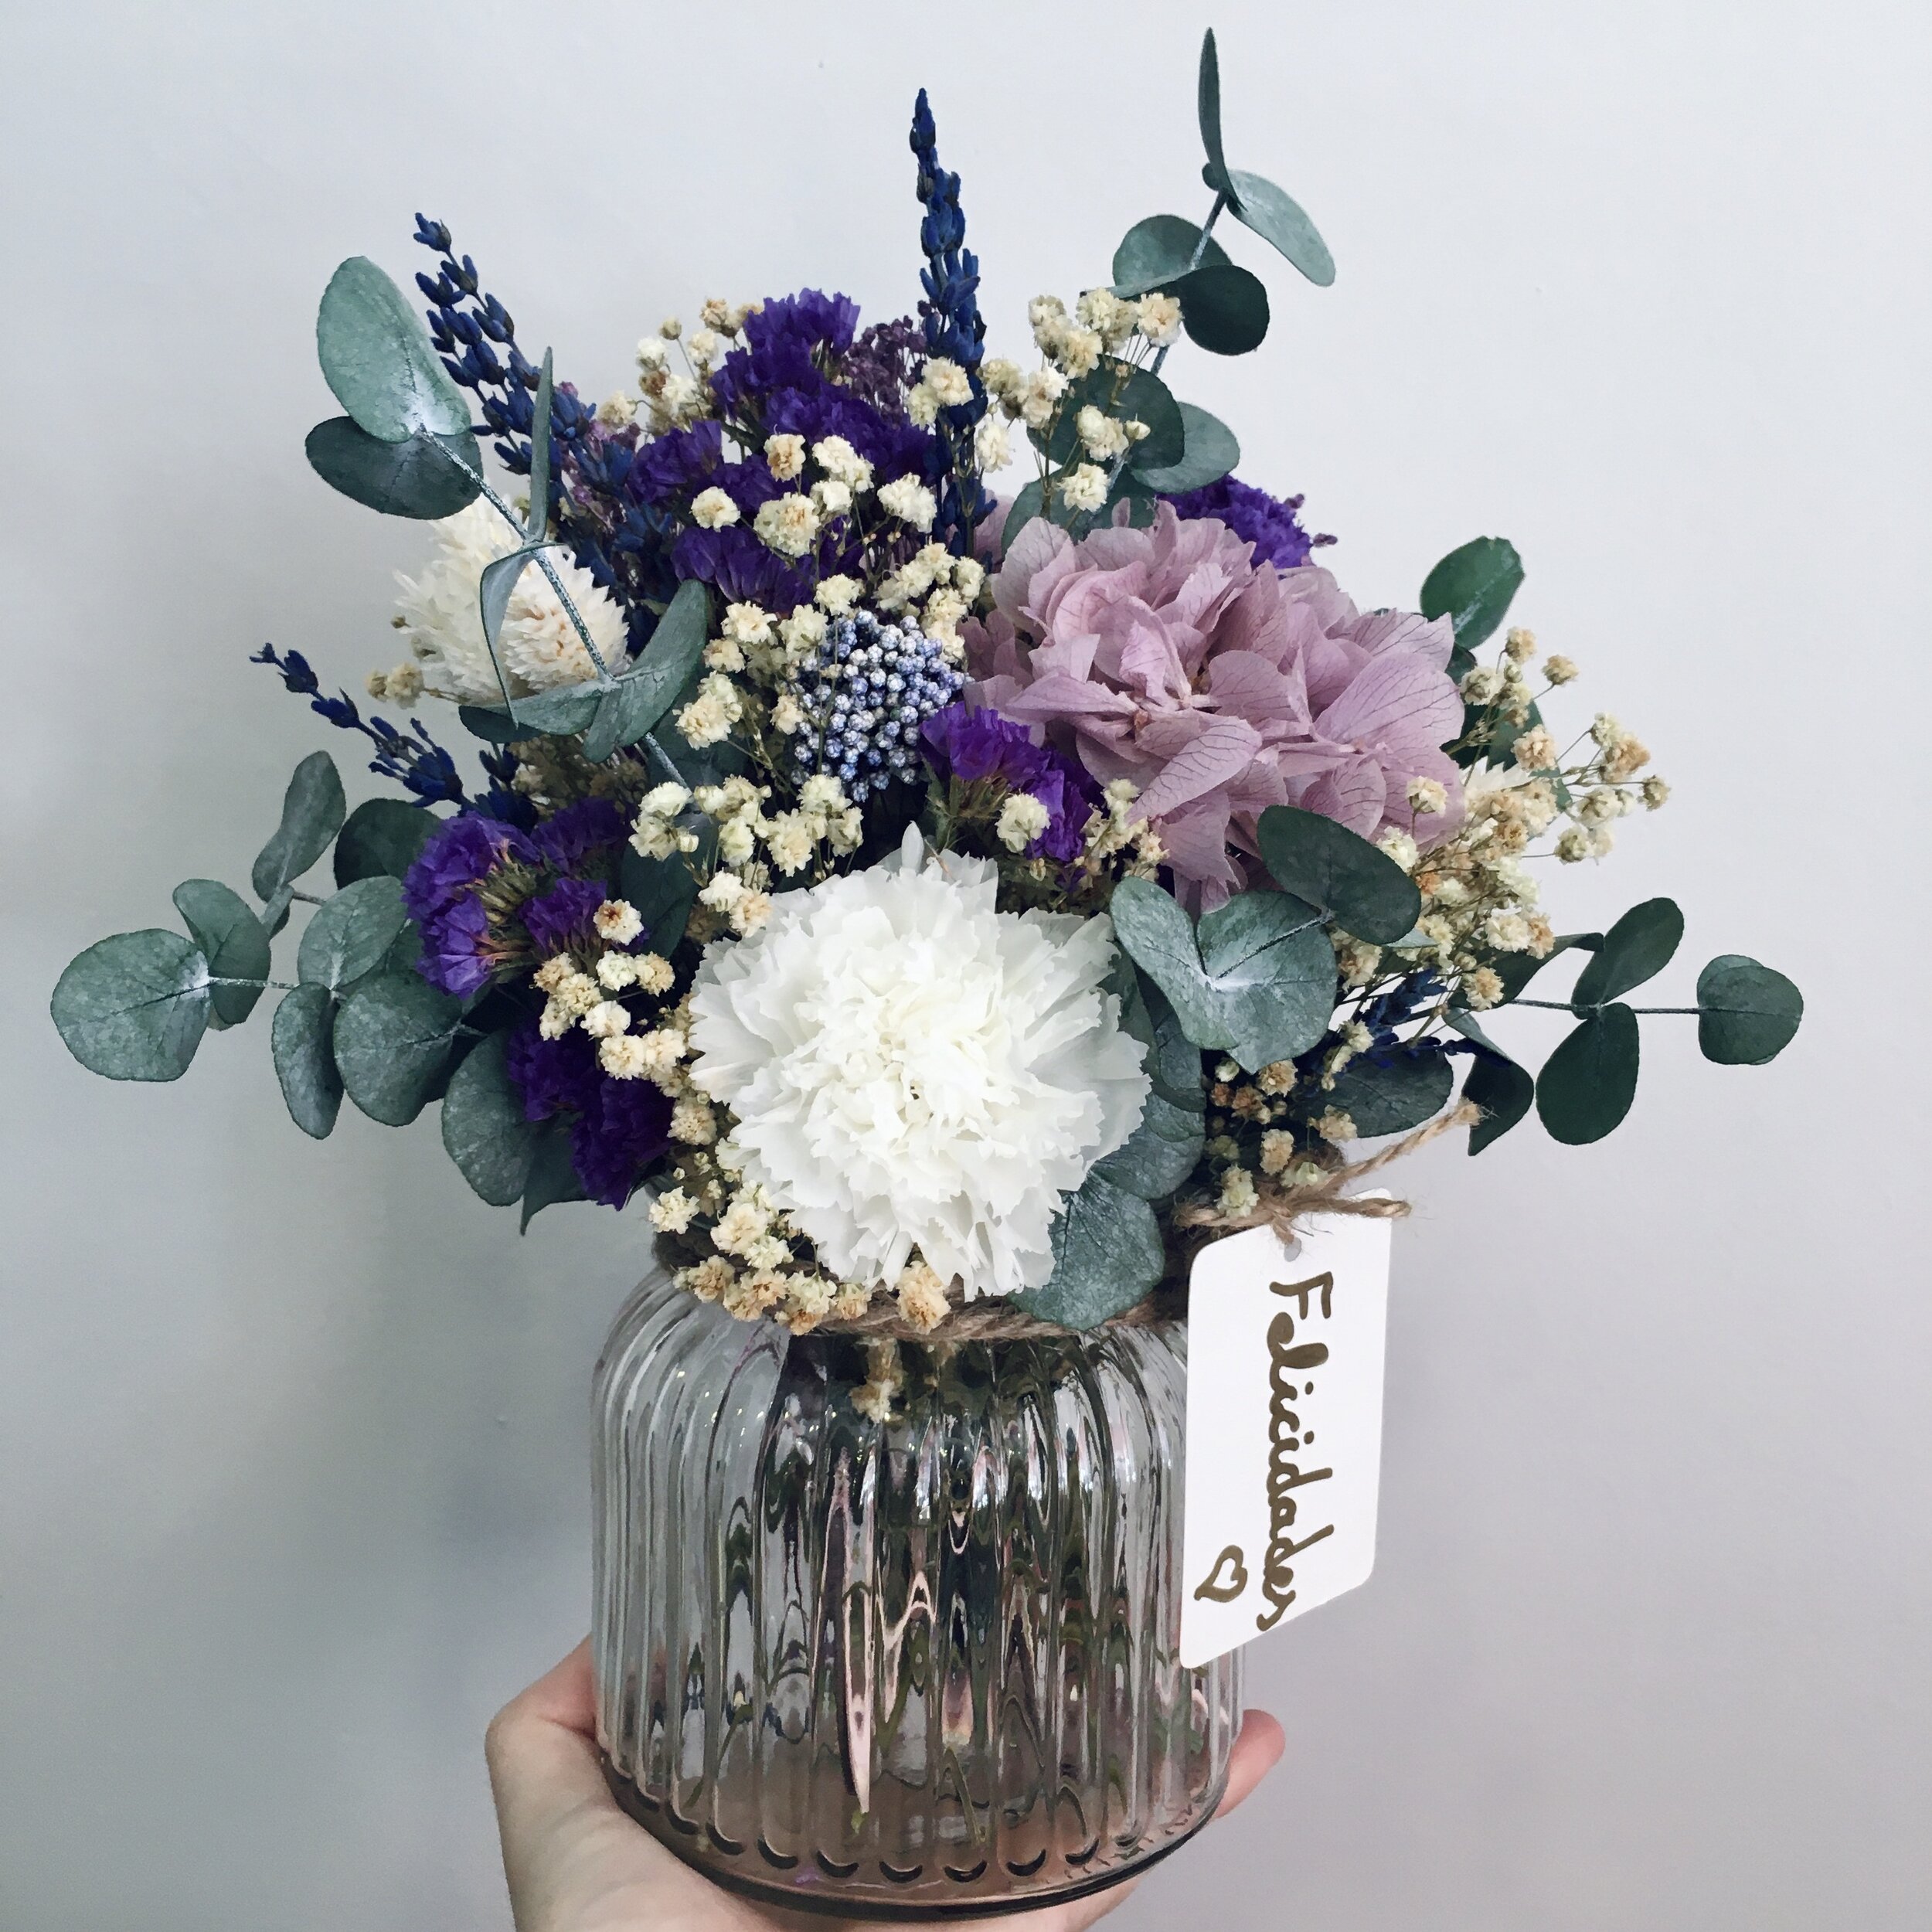 Jarrón de cristal con flores preservadas con hortensias y paniculata.